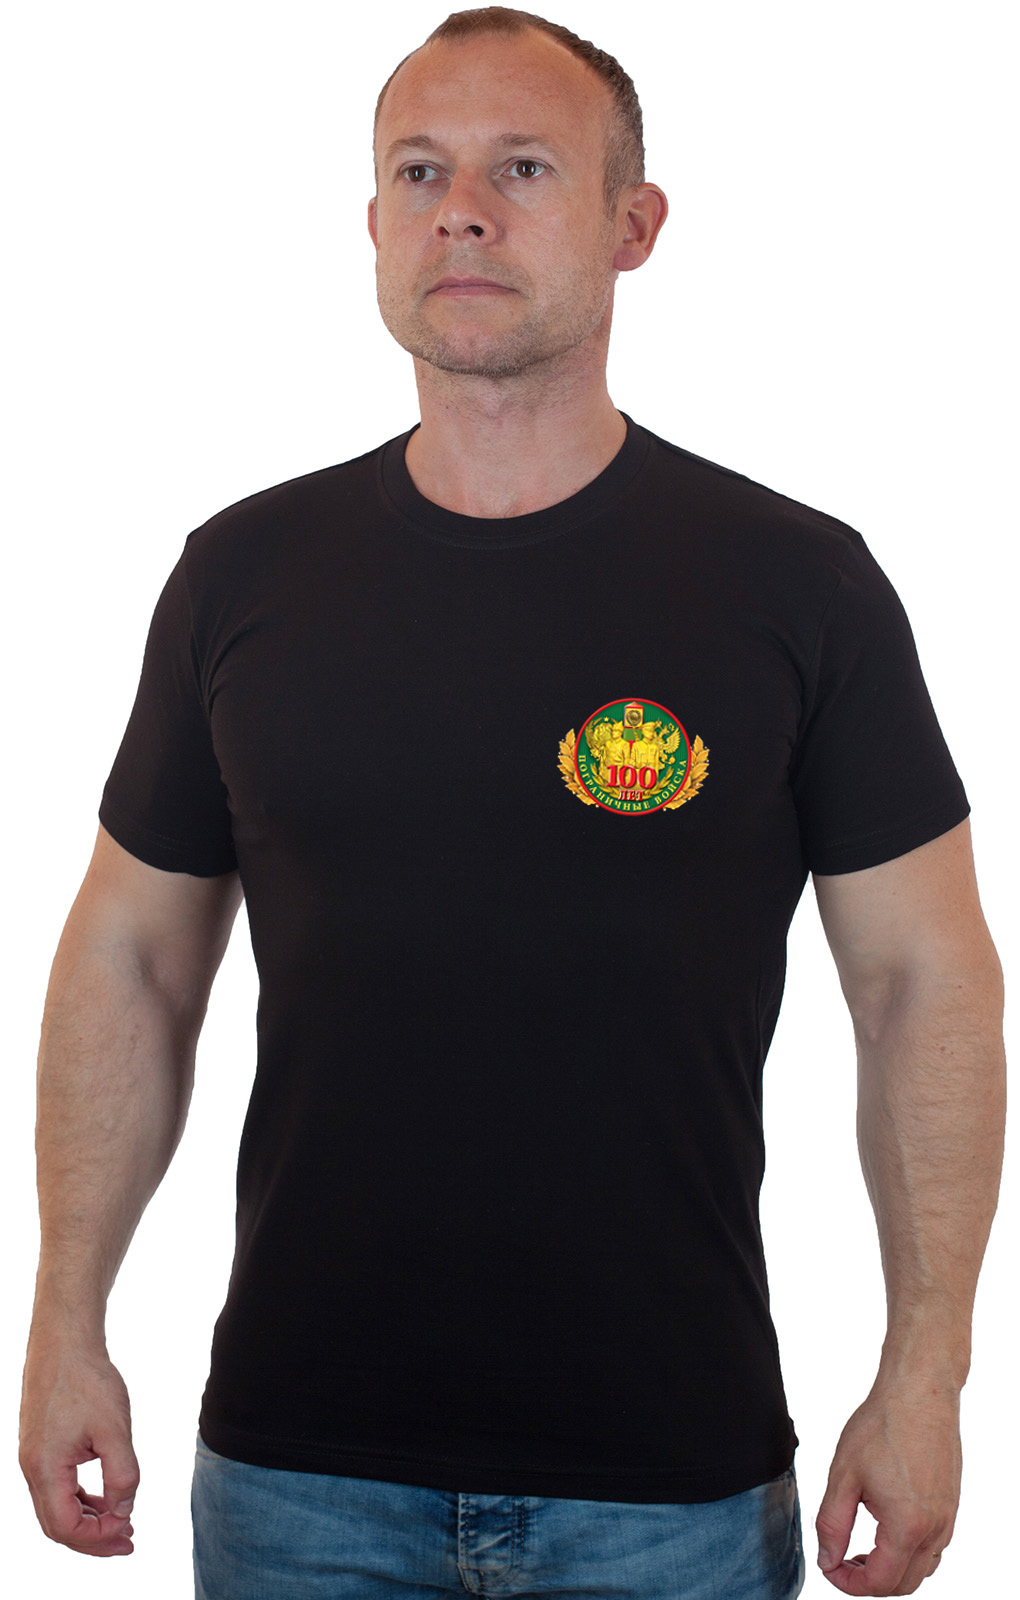 Серьезная футболка с эмблемой Пограничных войск. 